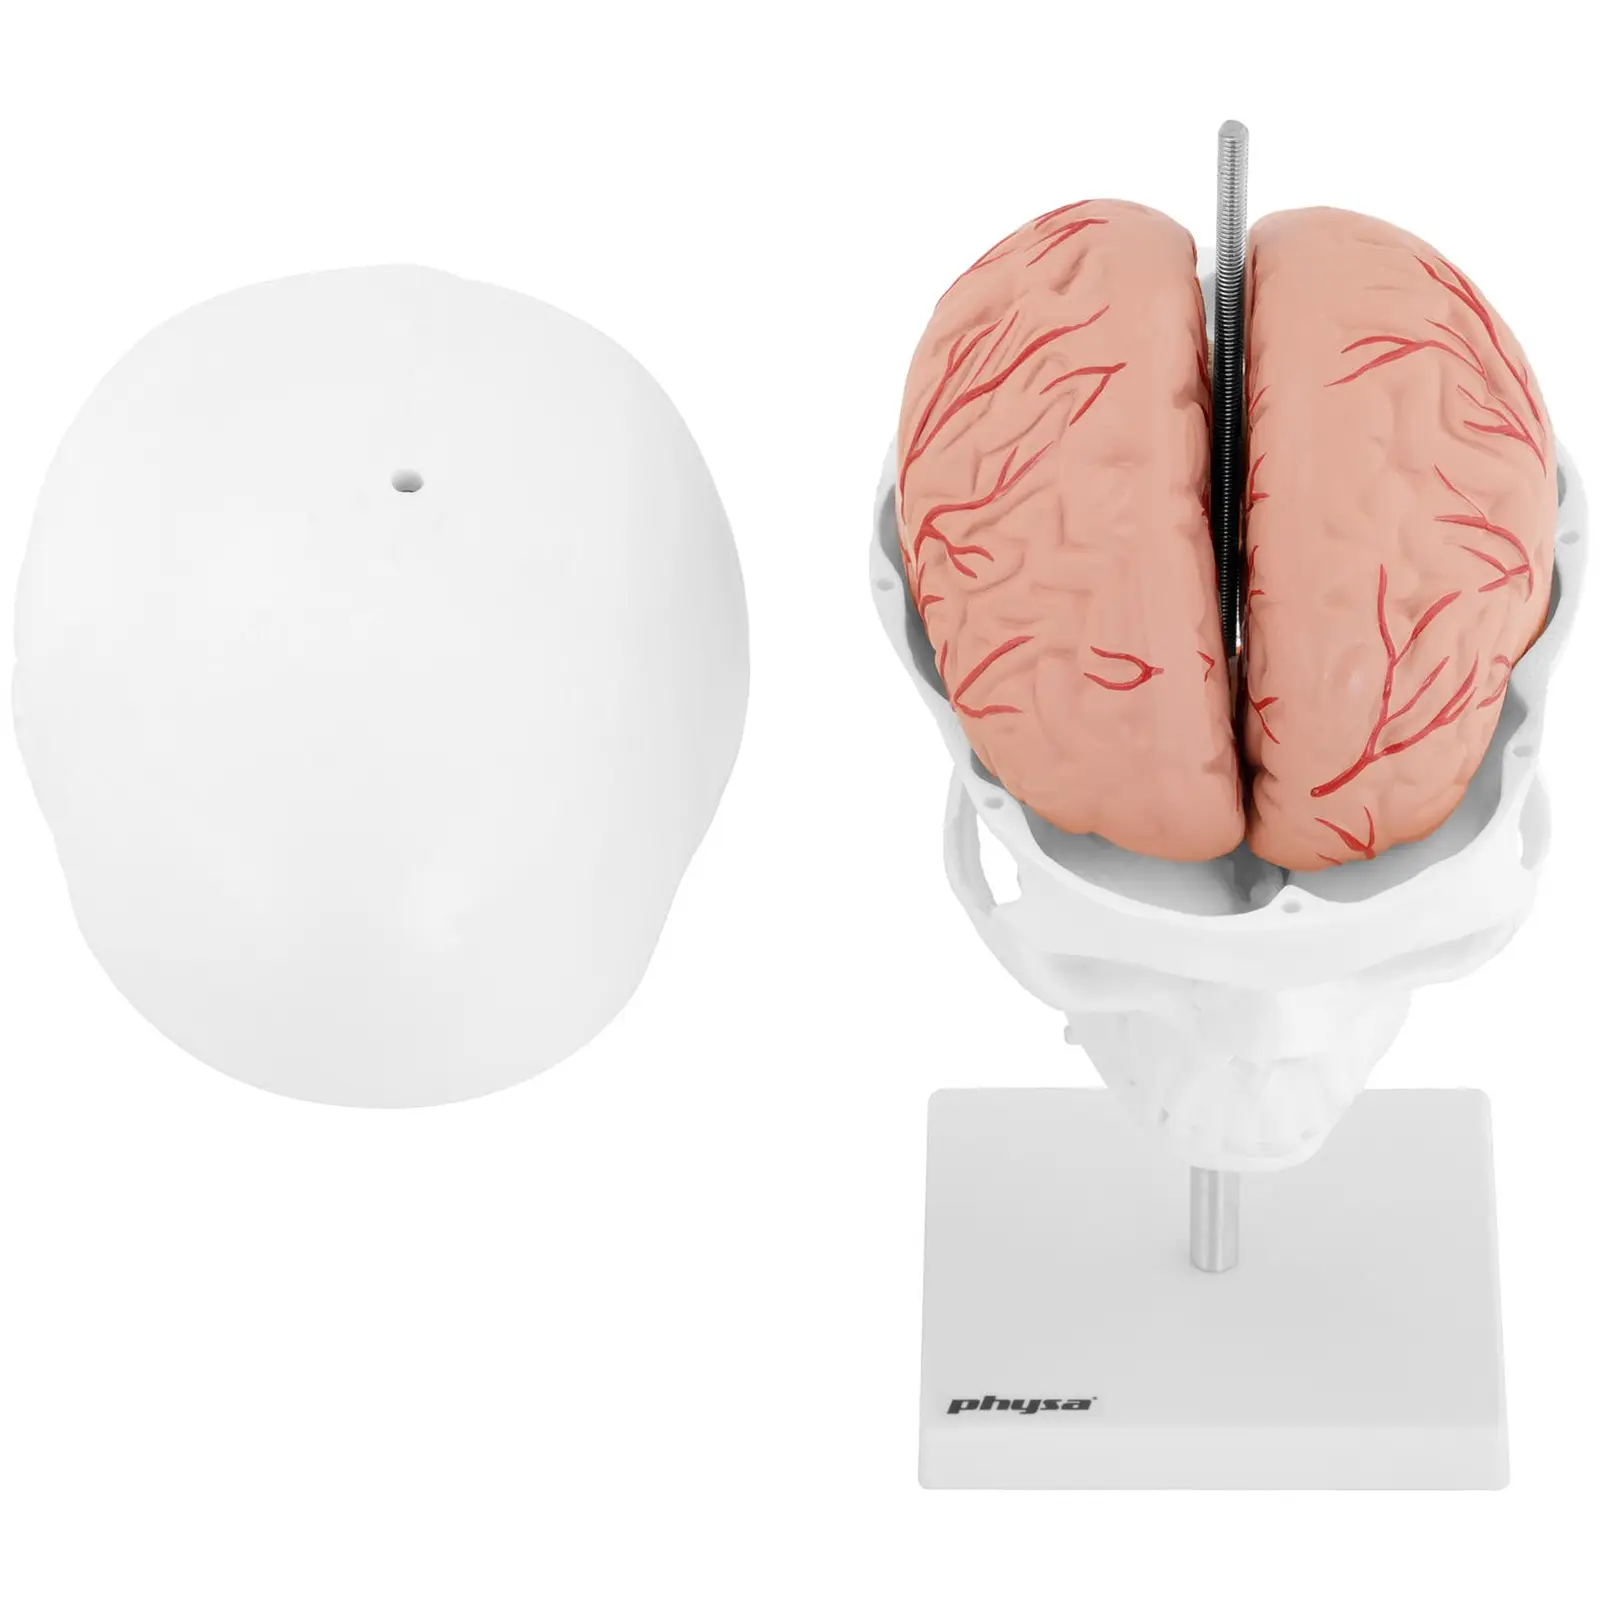 Modelo de cráneo - con 7 vértebras cervicales y cerebro - tamaño natural